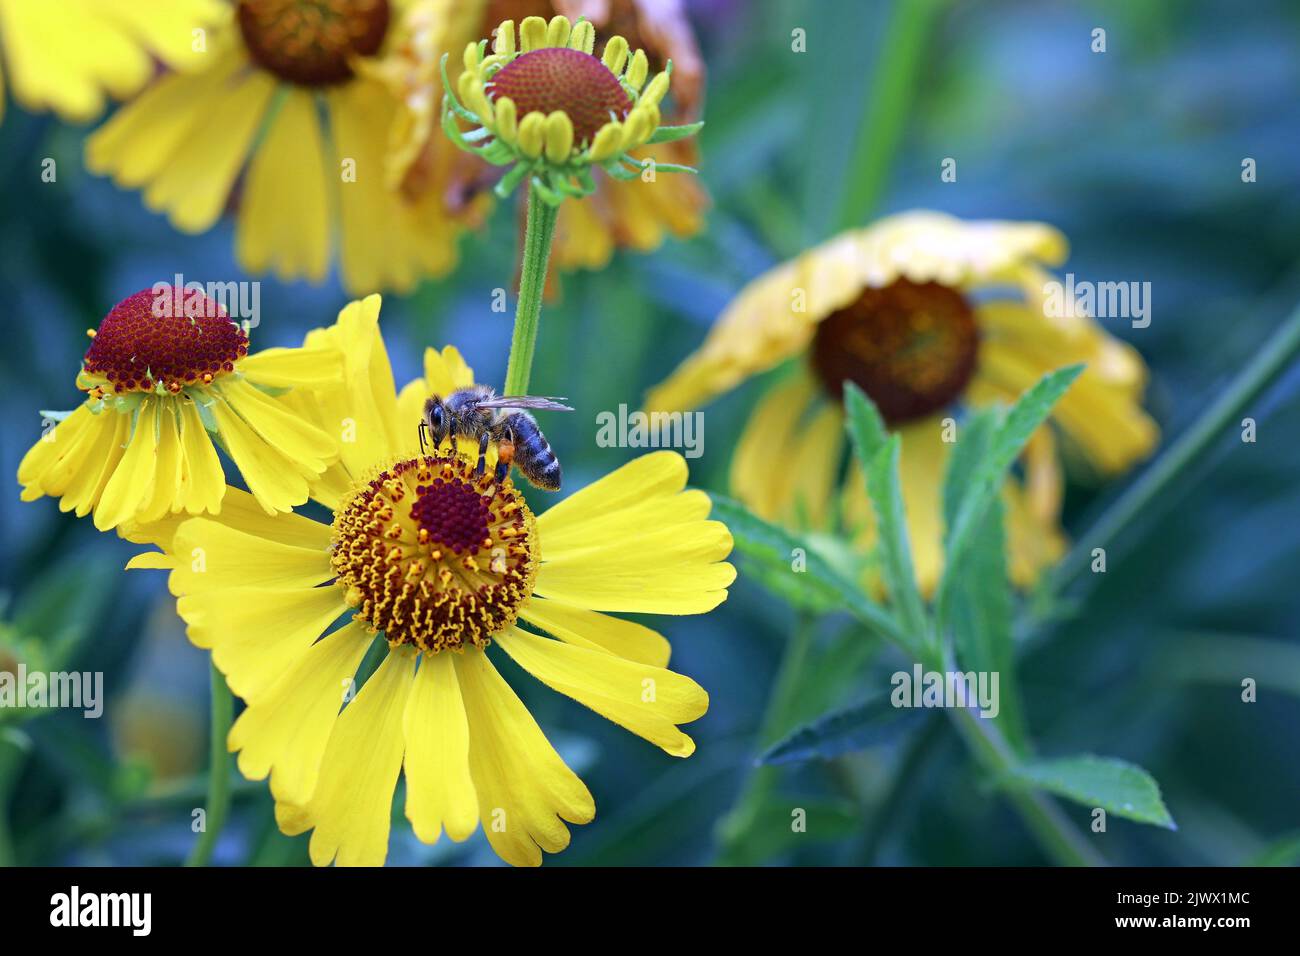 Une abeille rassemble le nectar et le pollen d'un helenium jaune : helenium Autumnale (Sneezeweed). Jardins Kew de septembre Banque D'Images